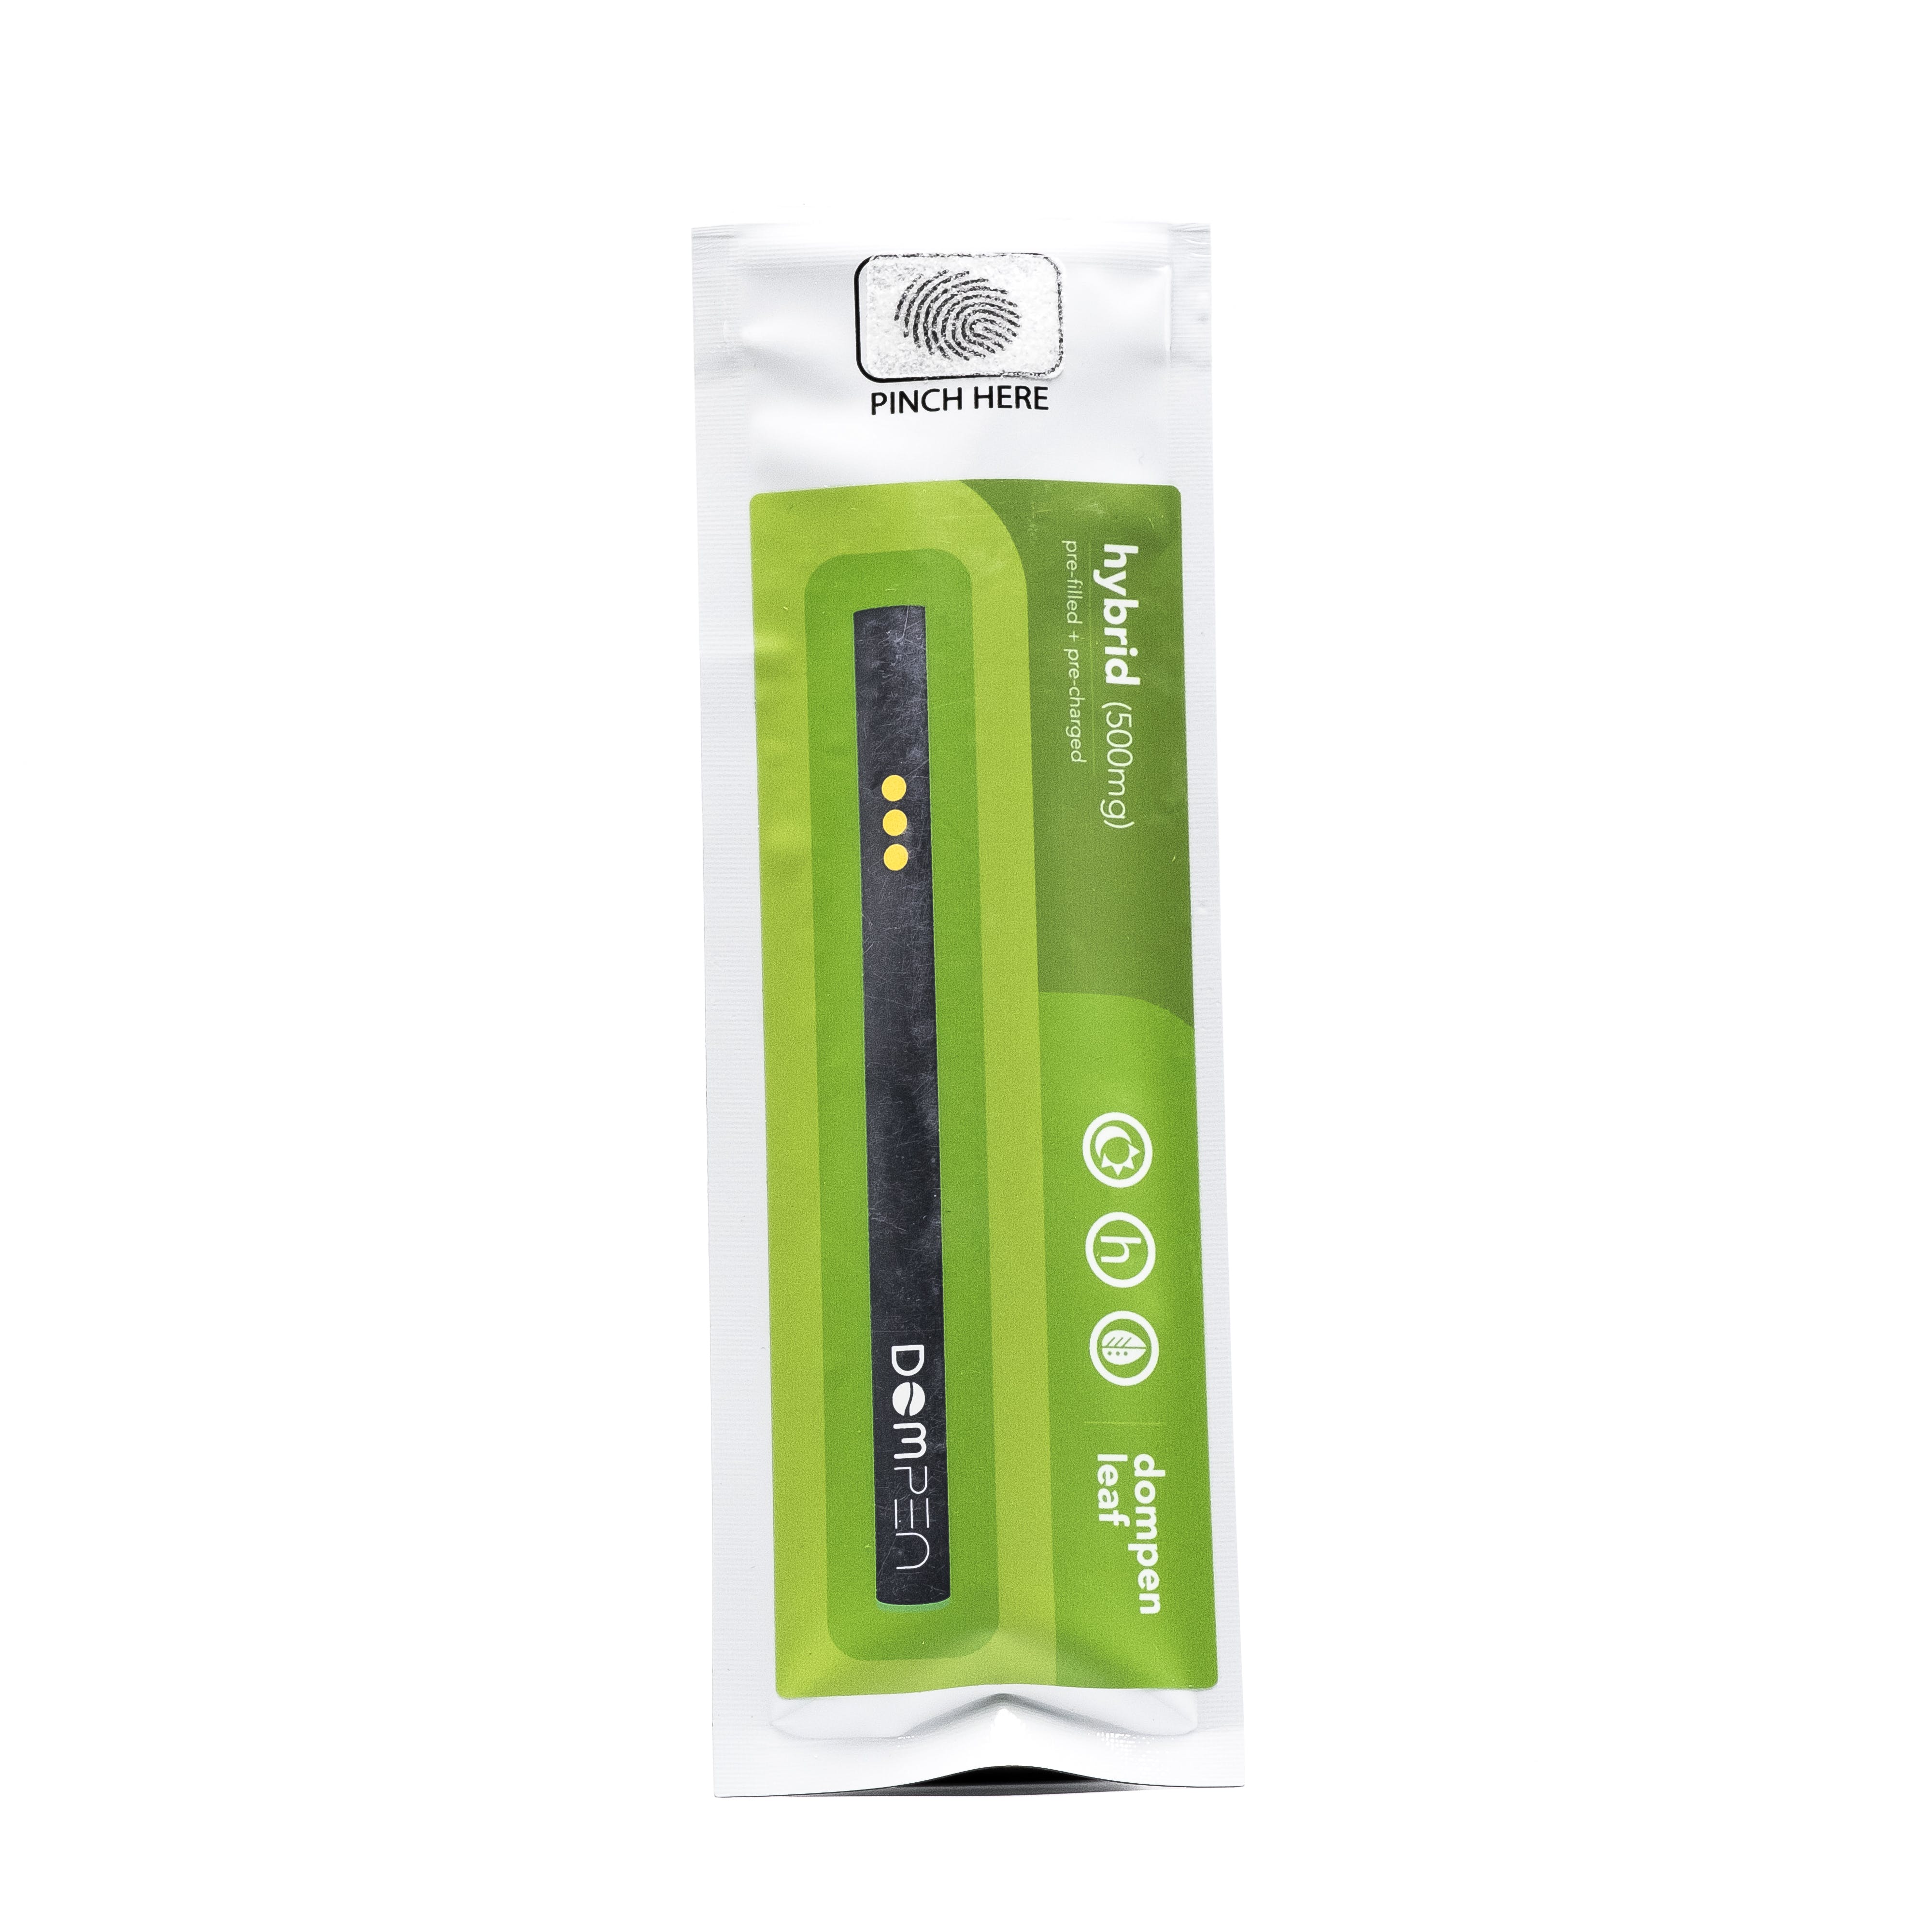 OG Kush Leaf Hybrid Disposable Vape Pen (.5g) - DomPen